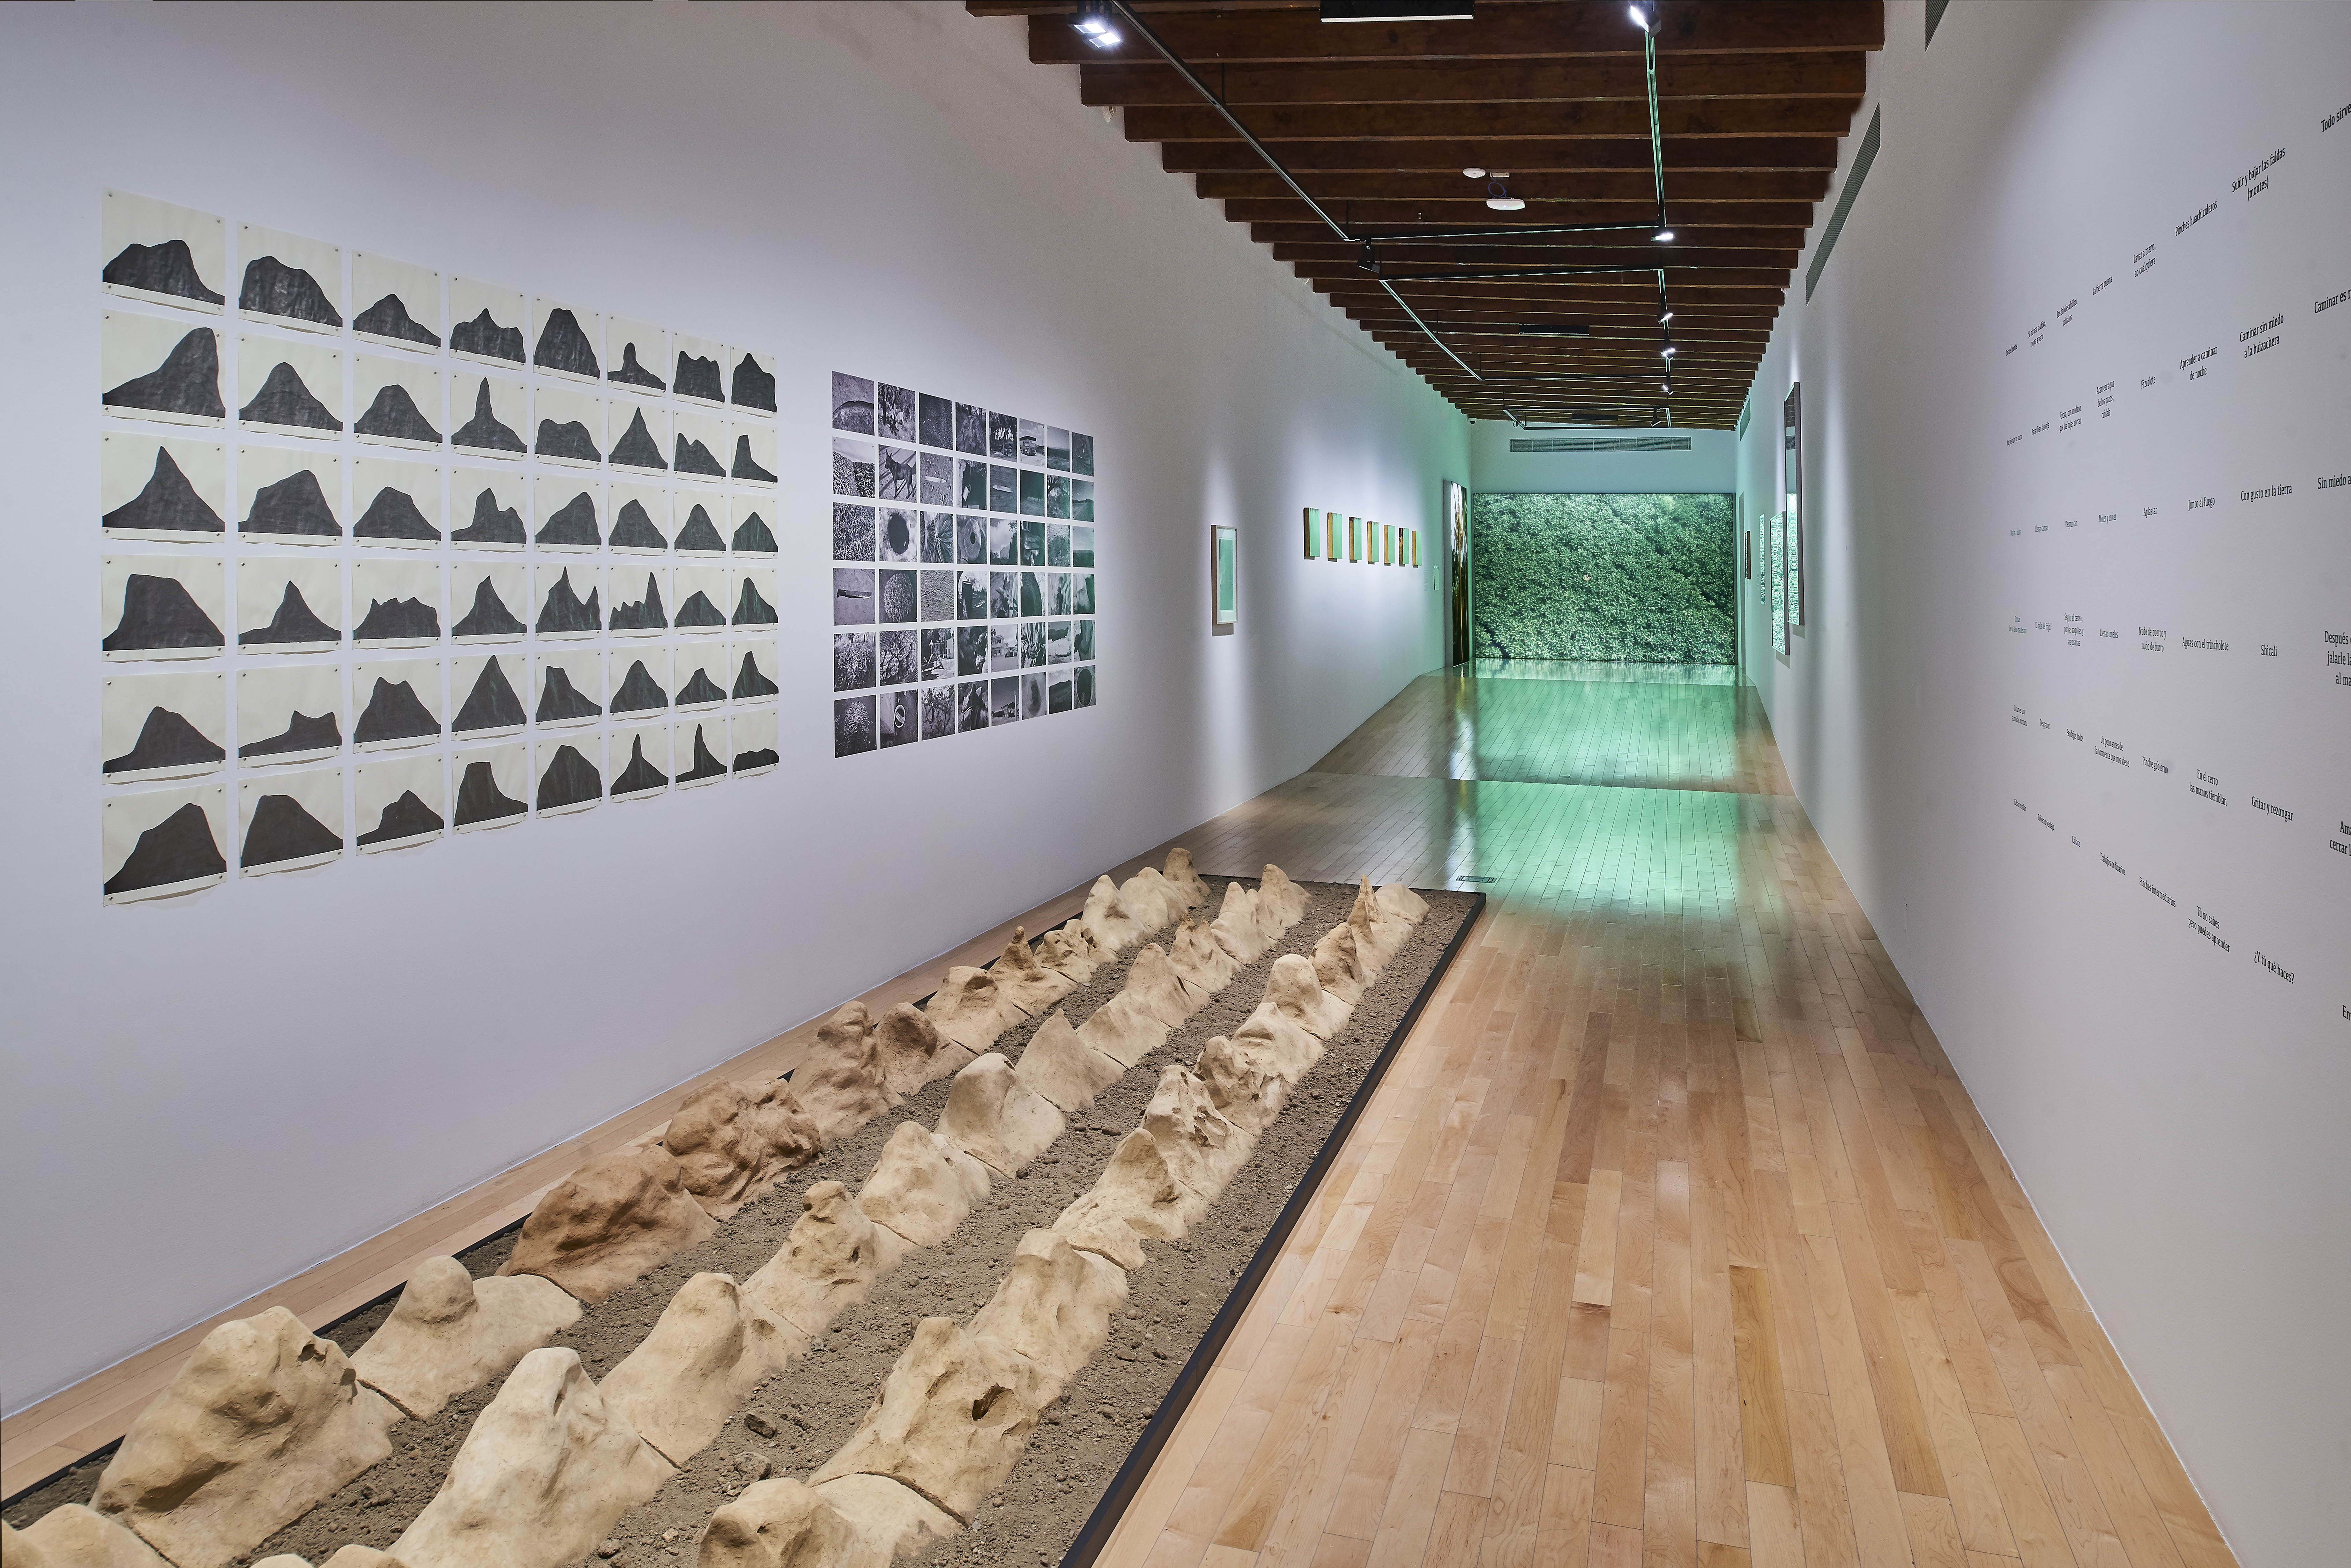 Lecciones de cosecha | El tiempo en las cosas II. Salas de Arte Contemporáneo | Museo Amparo, Puebla